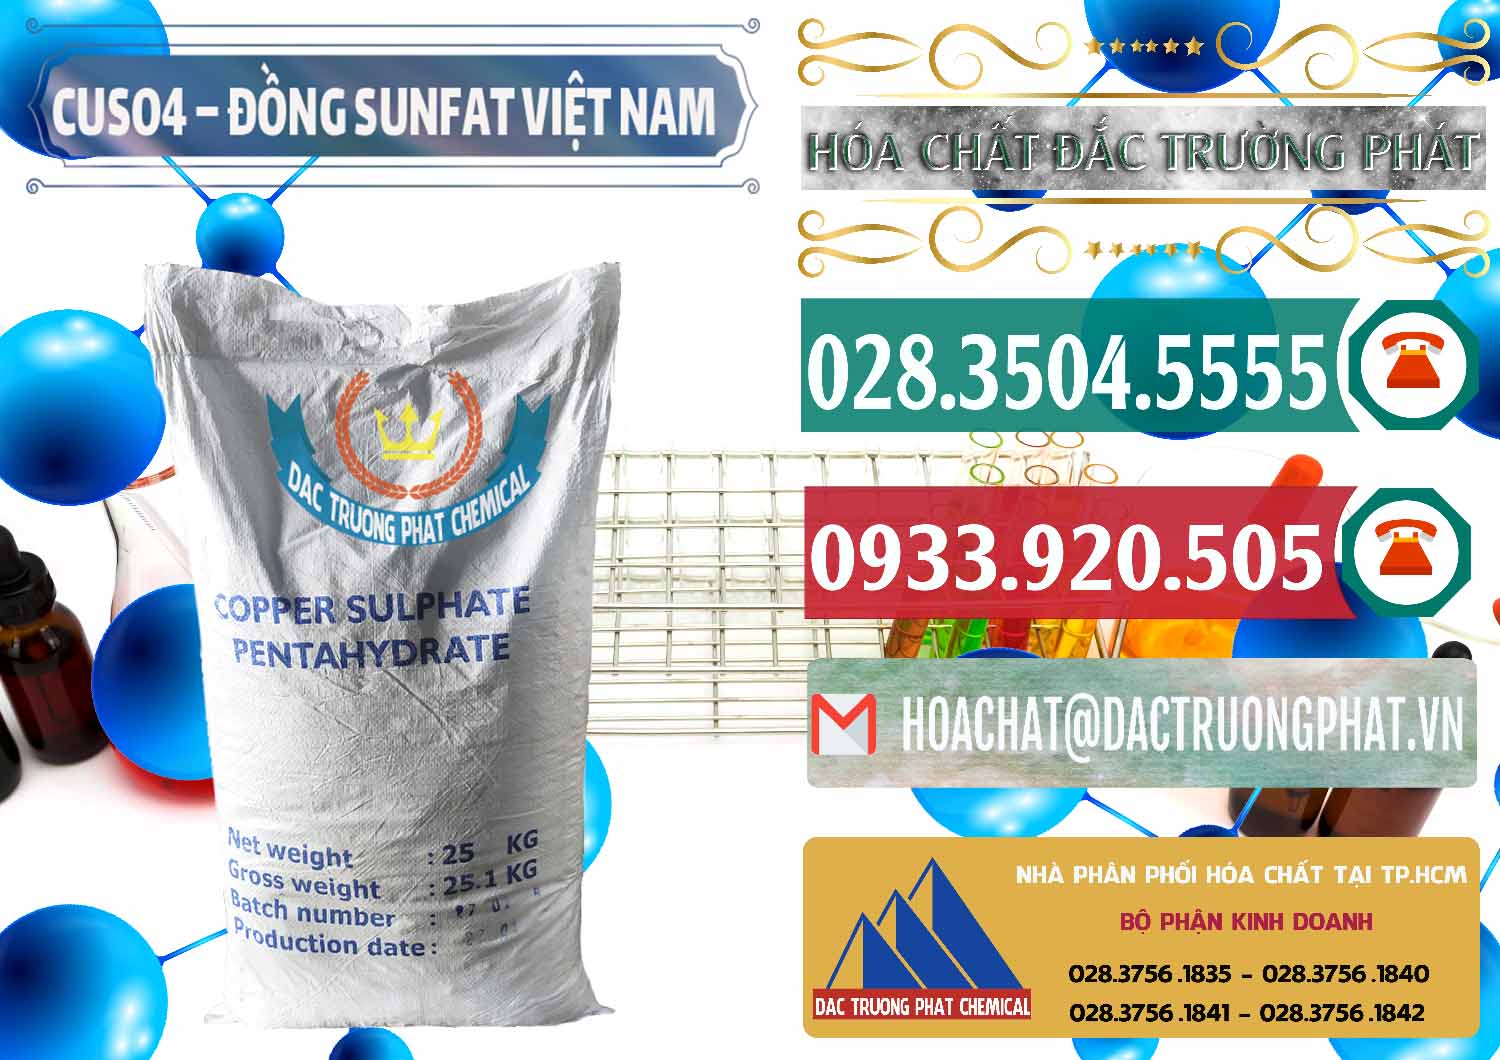 Cty chuyên phân phối & bán CuSO4 – Đồng Sunfat Dạng Bột Việt Nam - 0196 - Nhà cung ứng và phân phối hóa chất tại TP.HCM - muabanhoachat.vn